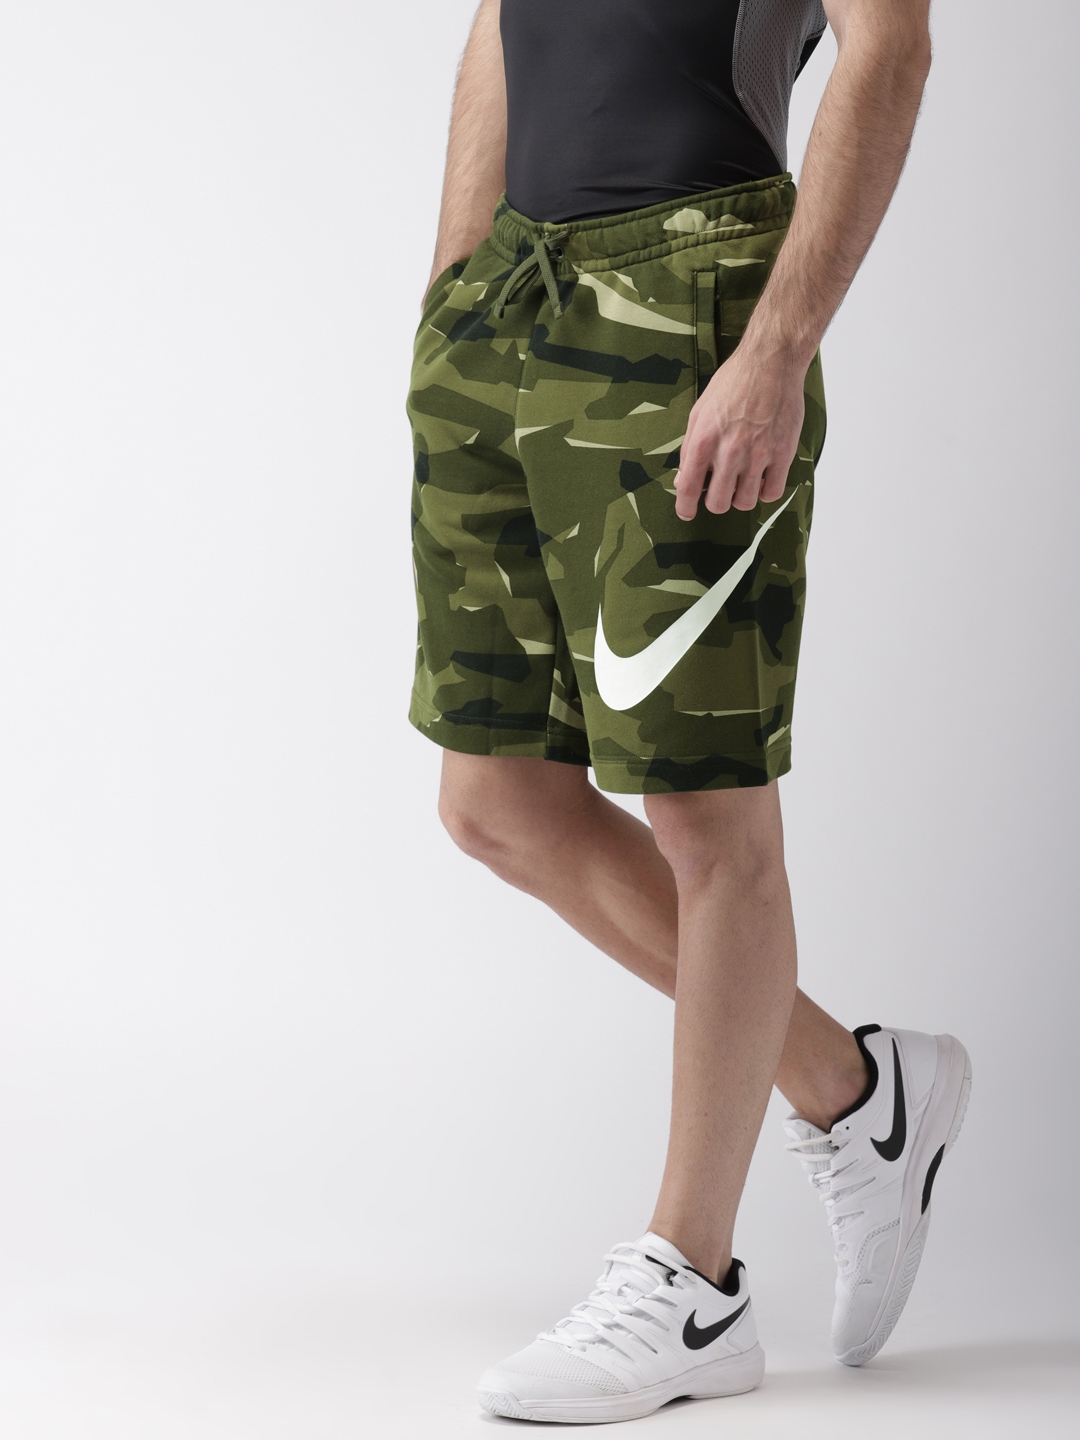 Buy nike green camo shorts> OFF-52%